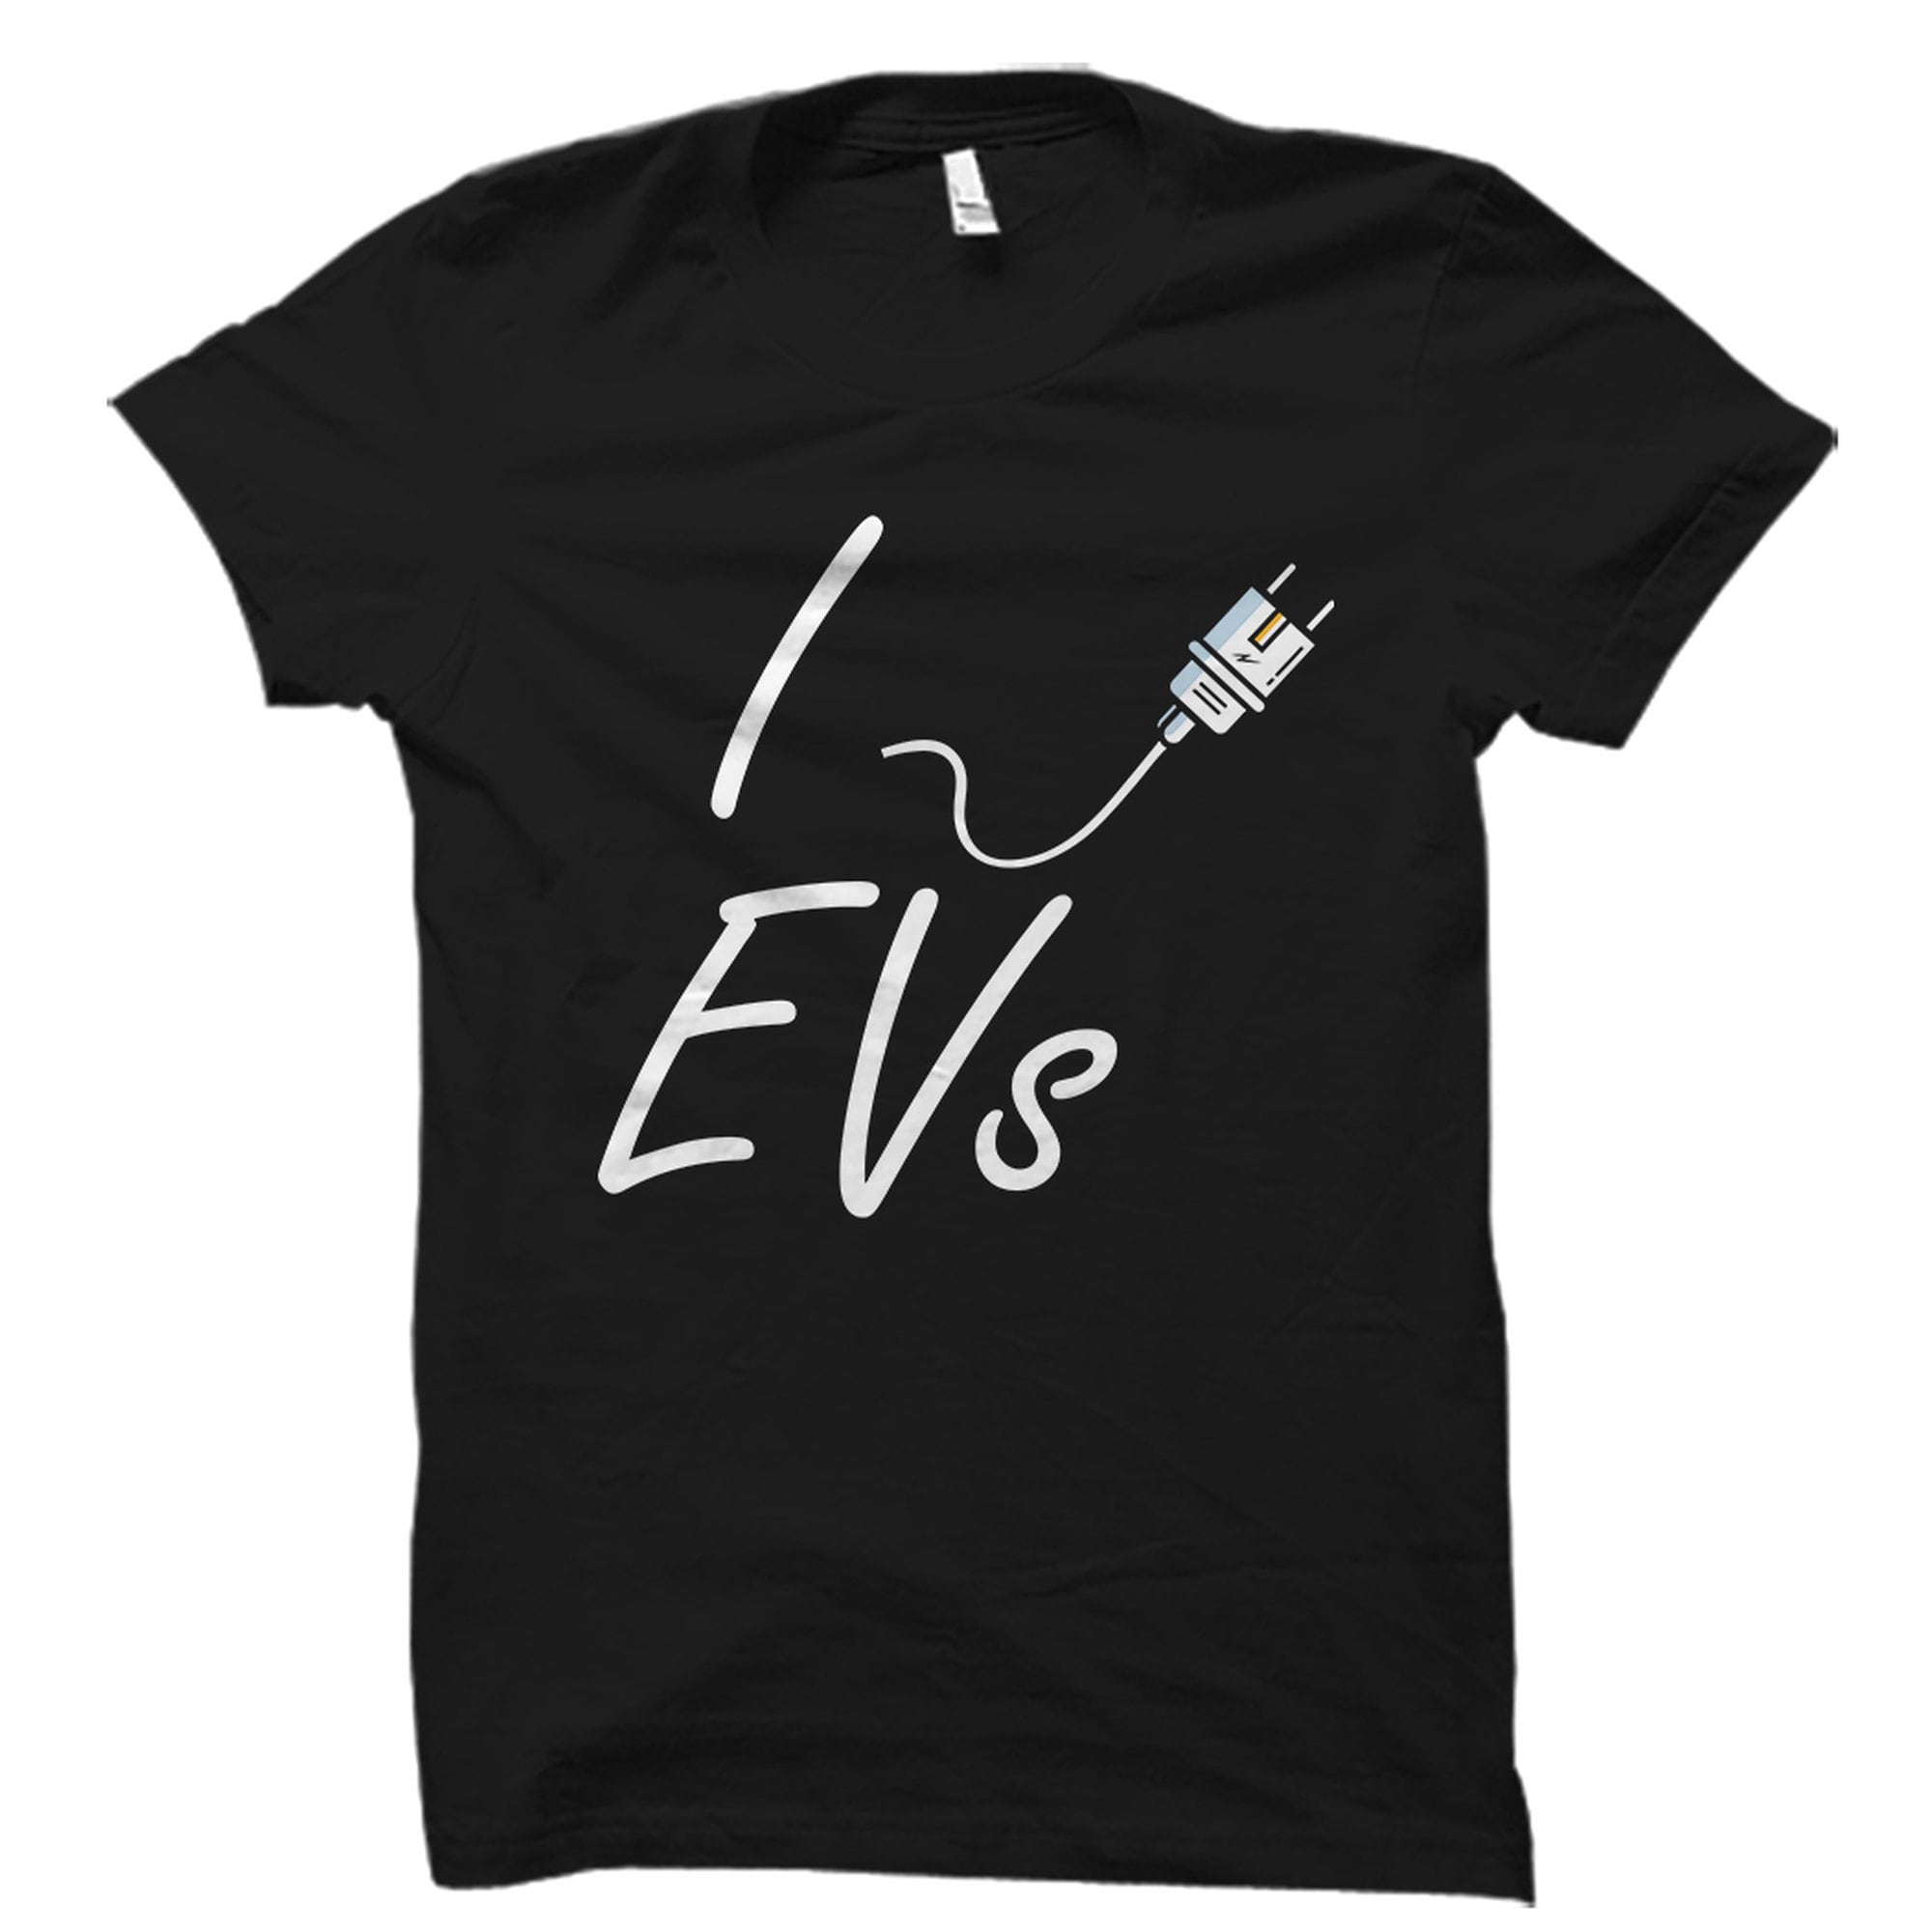 EV Origins The Electrified Garage Mechanic Shirt 2X- Large